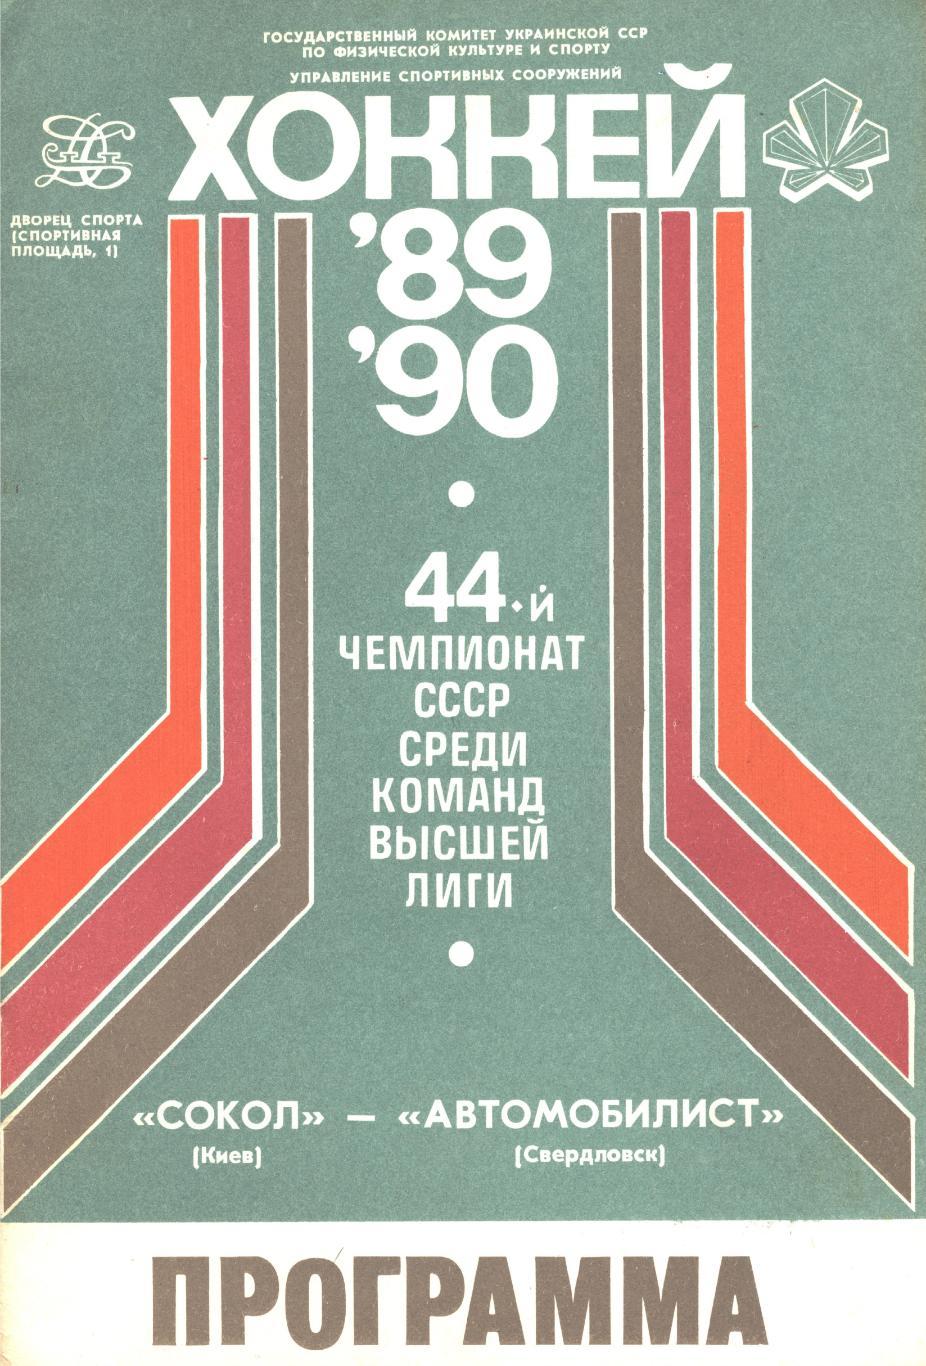 СОКОЛ (Киев) - АВТОМОБИЛИСТ (Свердловск), 11 ноября 1989 года